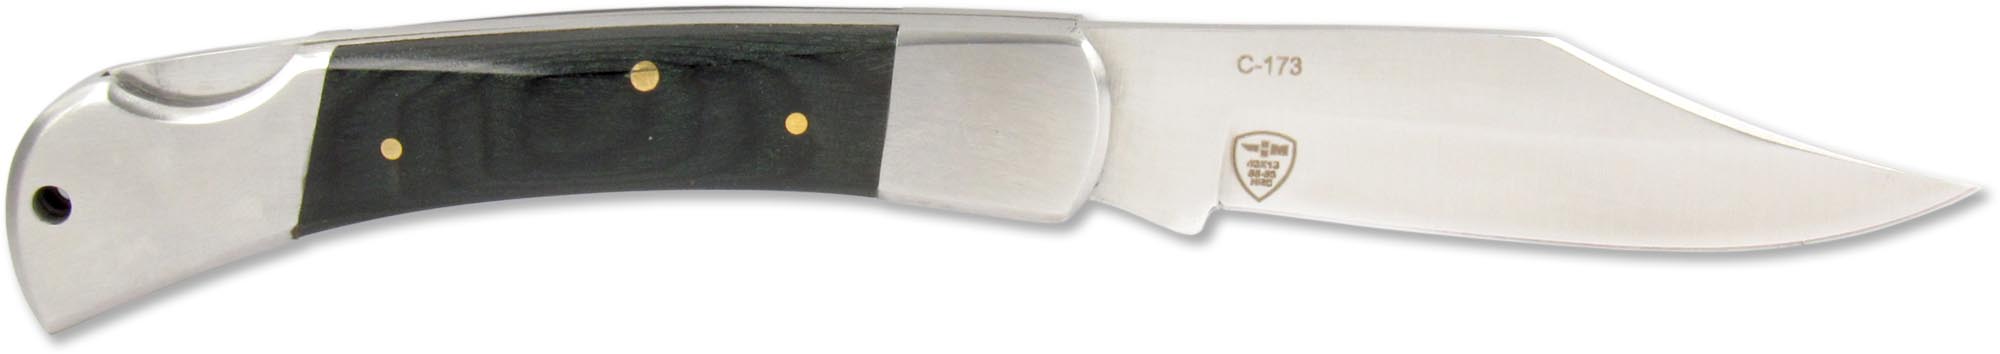 Нож складной Чёткий расклад C-173